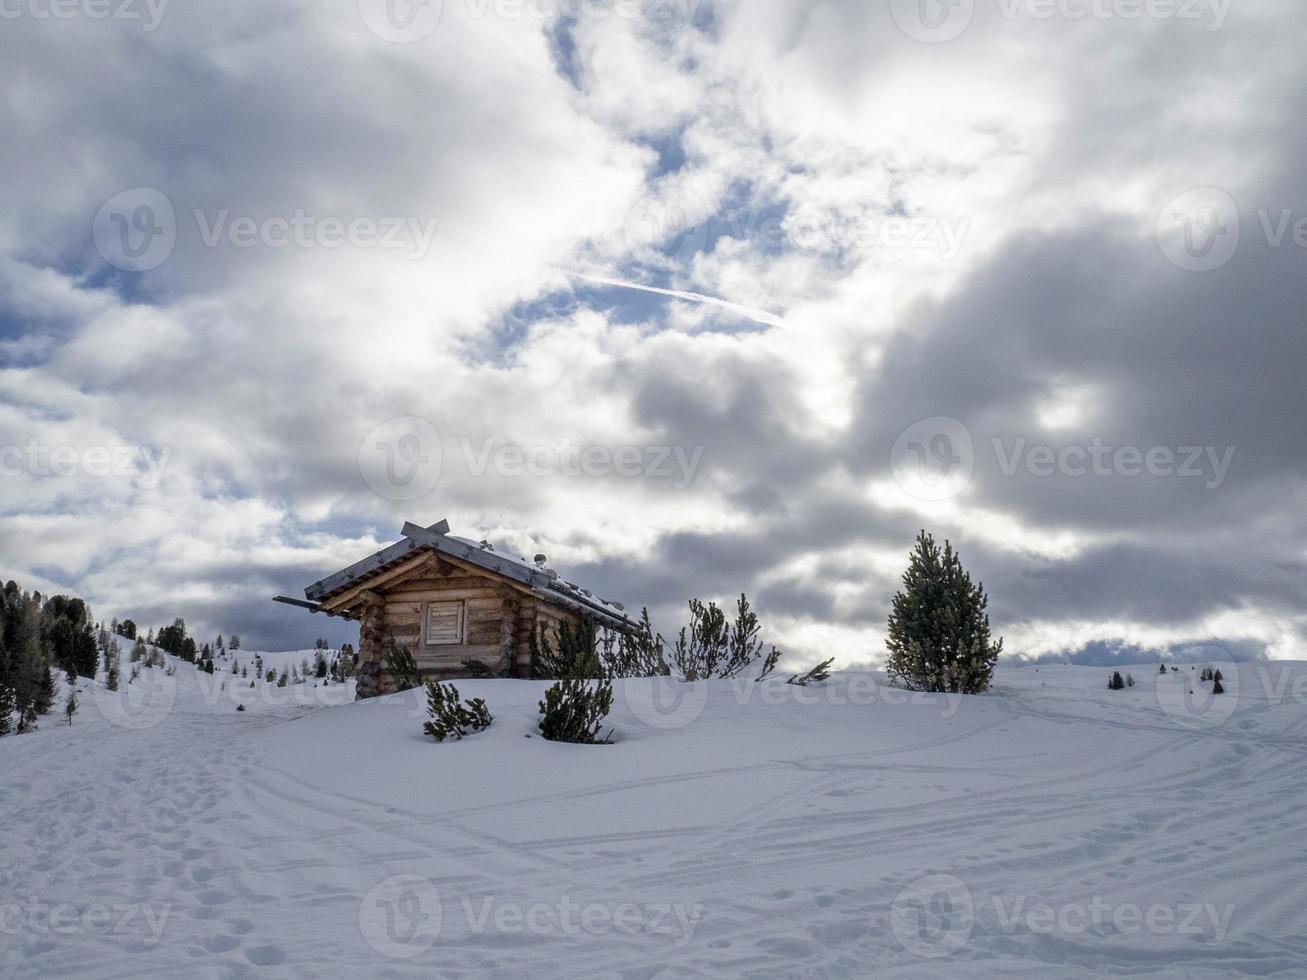 dolomitas nieve panorama cabaña de madera val badia armentarola foto